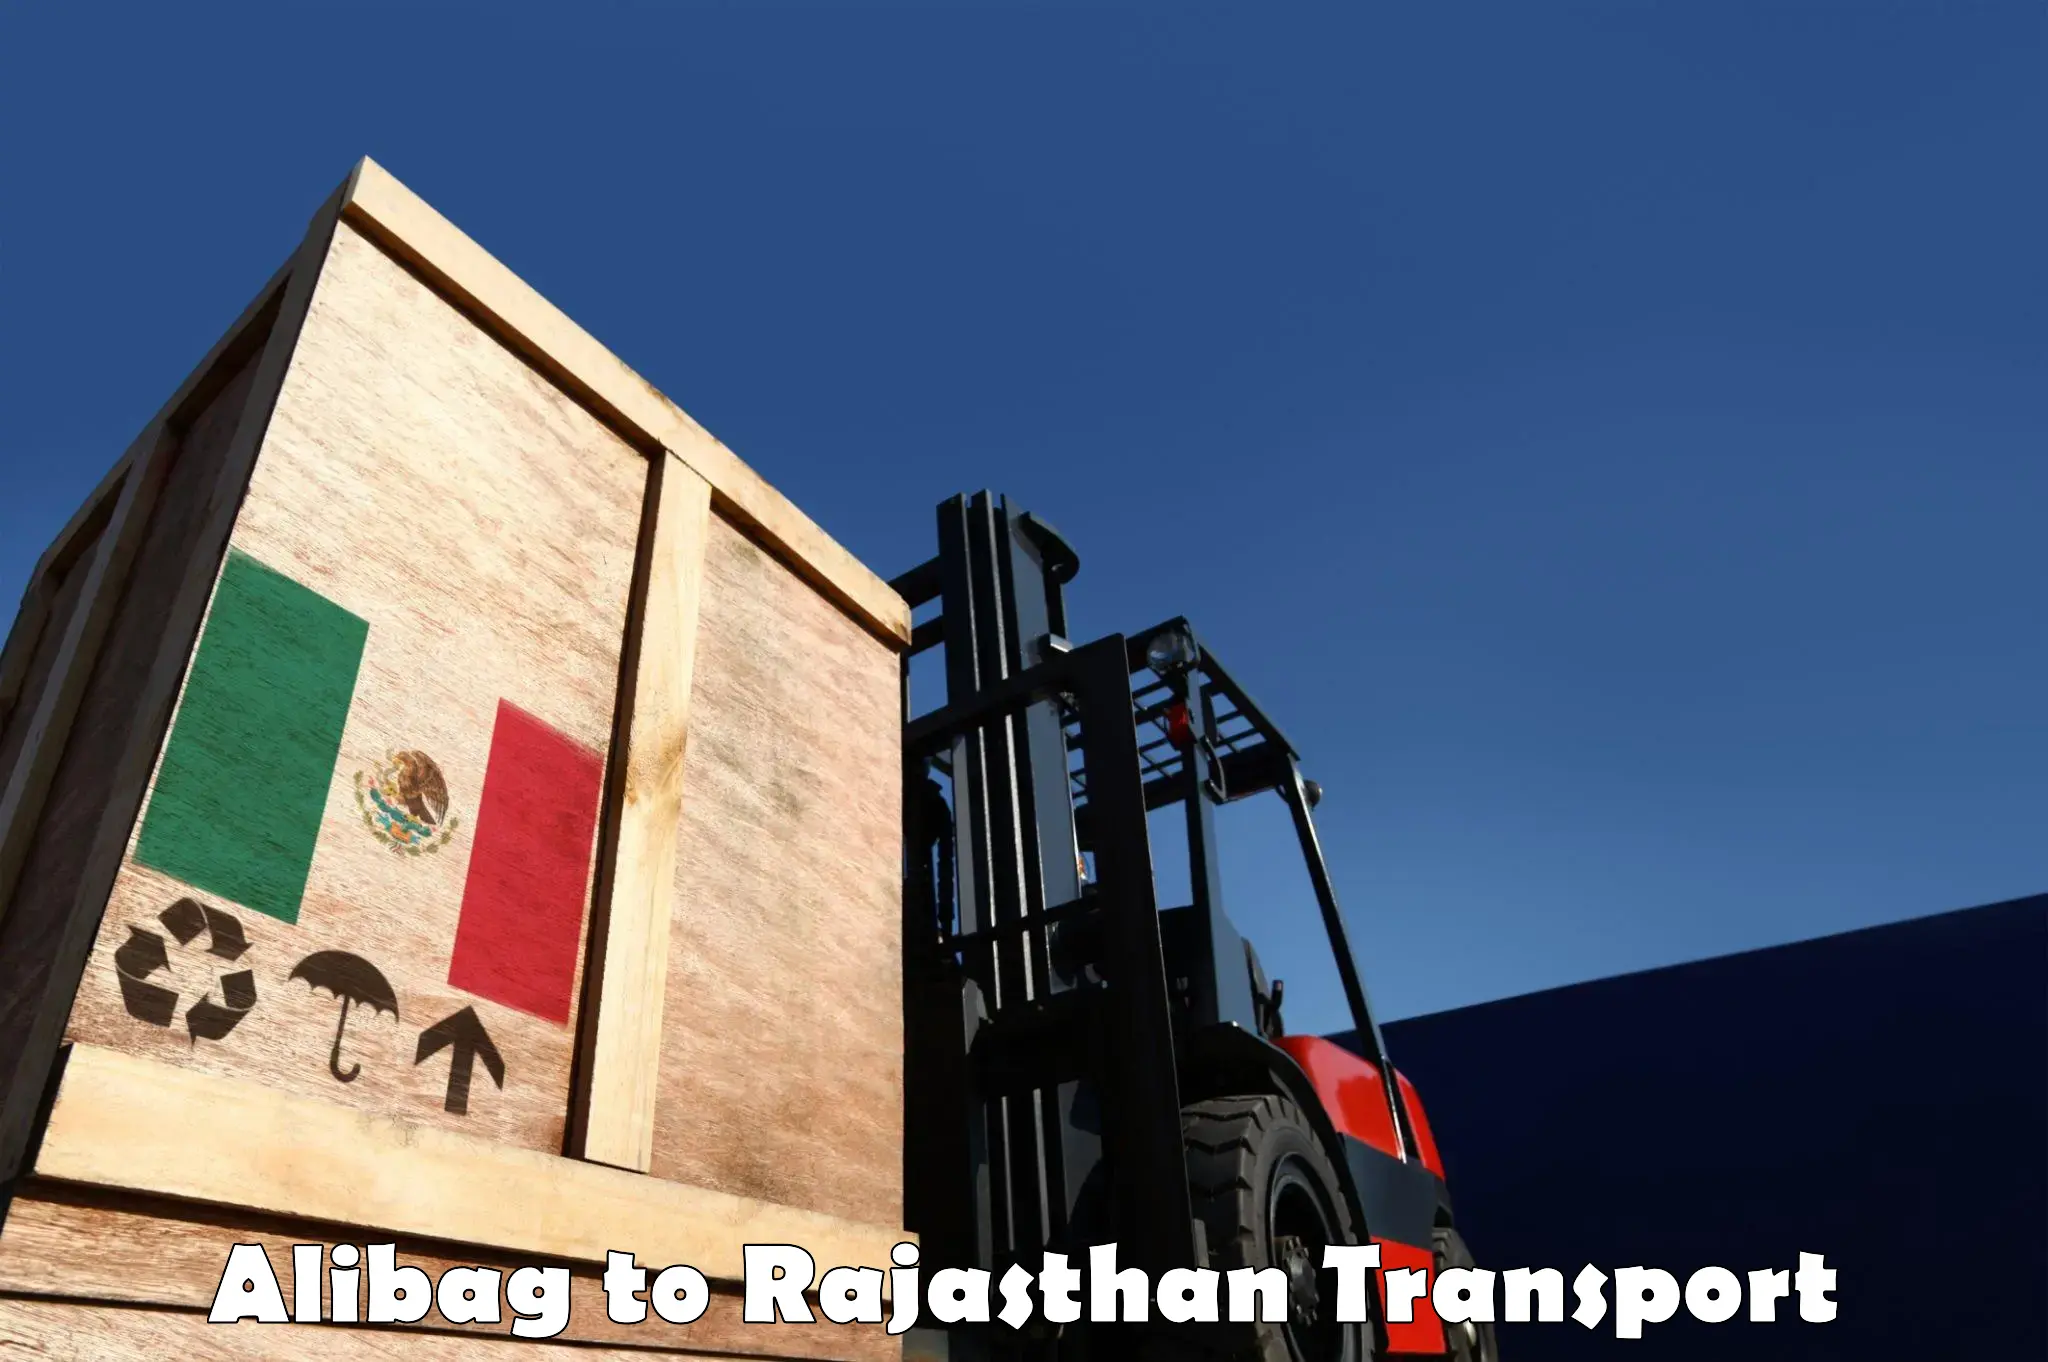 Daily transport service Alibag to Bagru